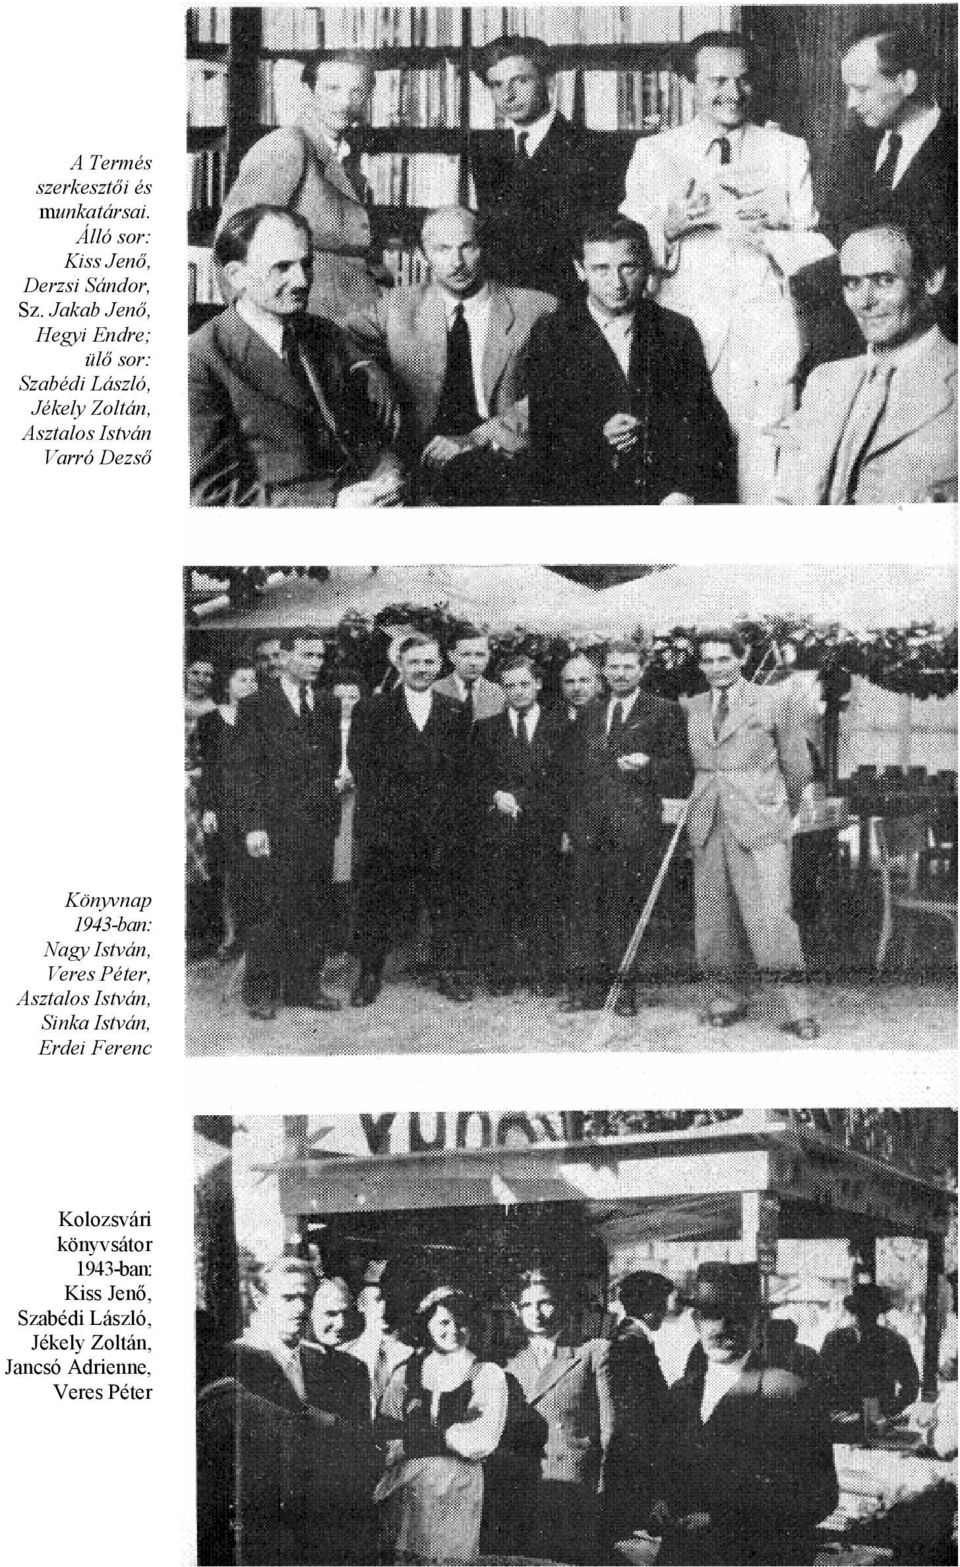 Dezső Könyvnap 1943-ban: Nagy István, Veres Péter, Asztalos István, Sinka István, Erdei